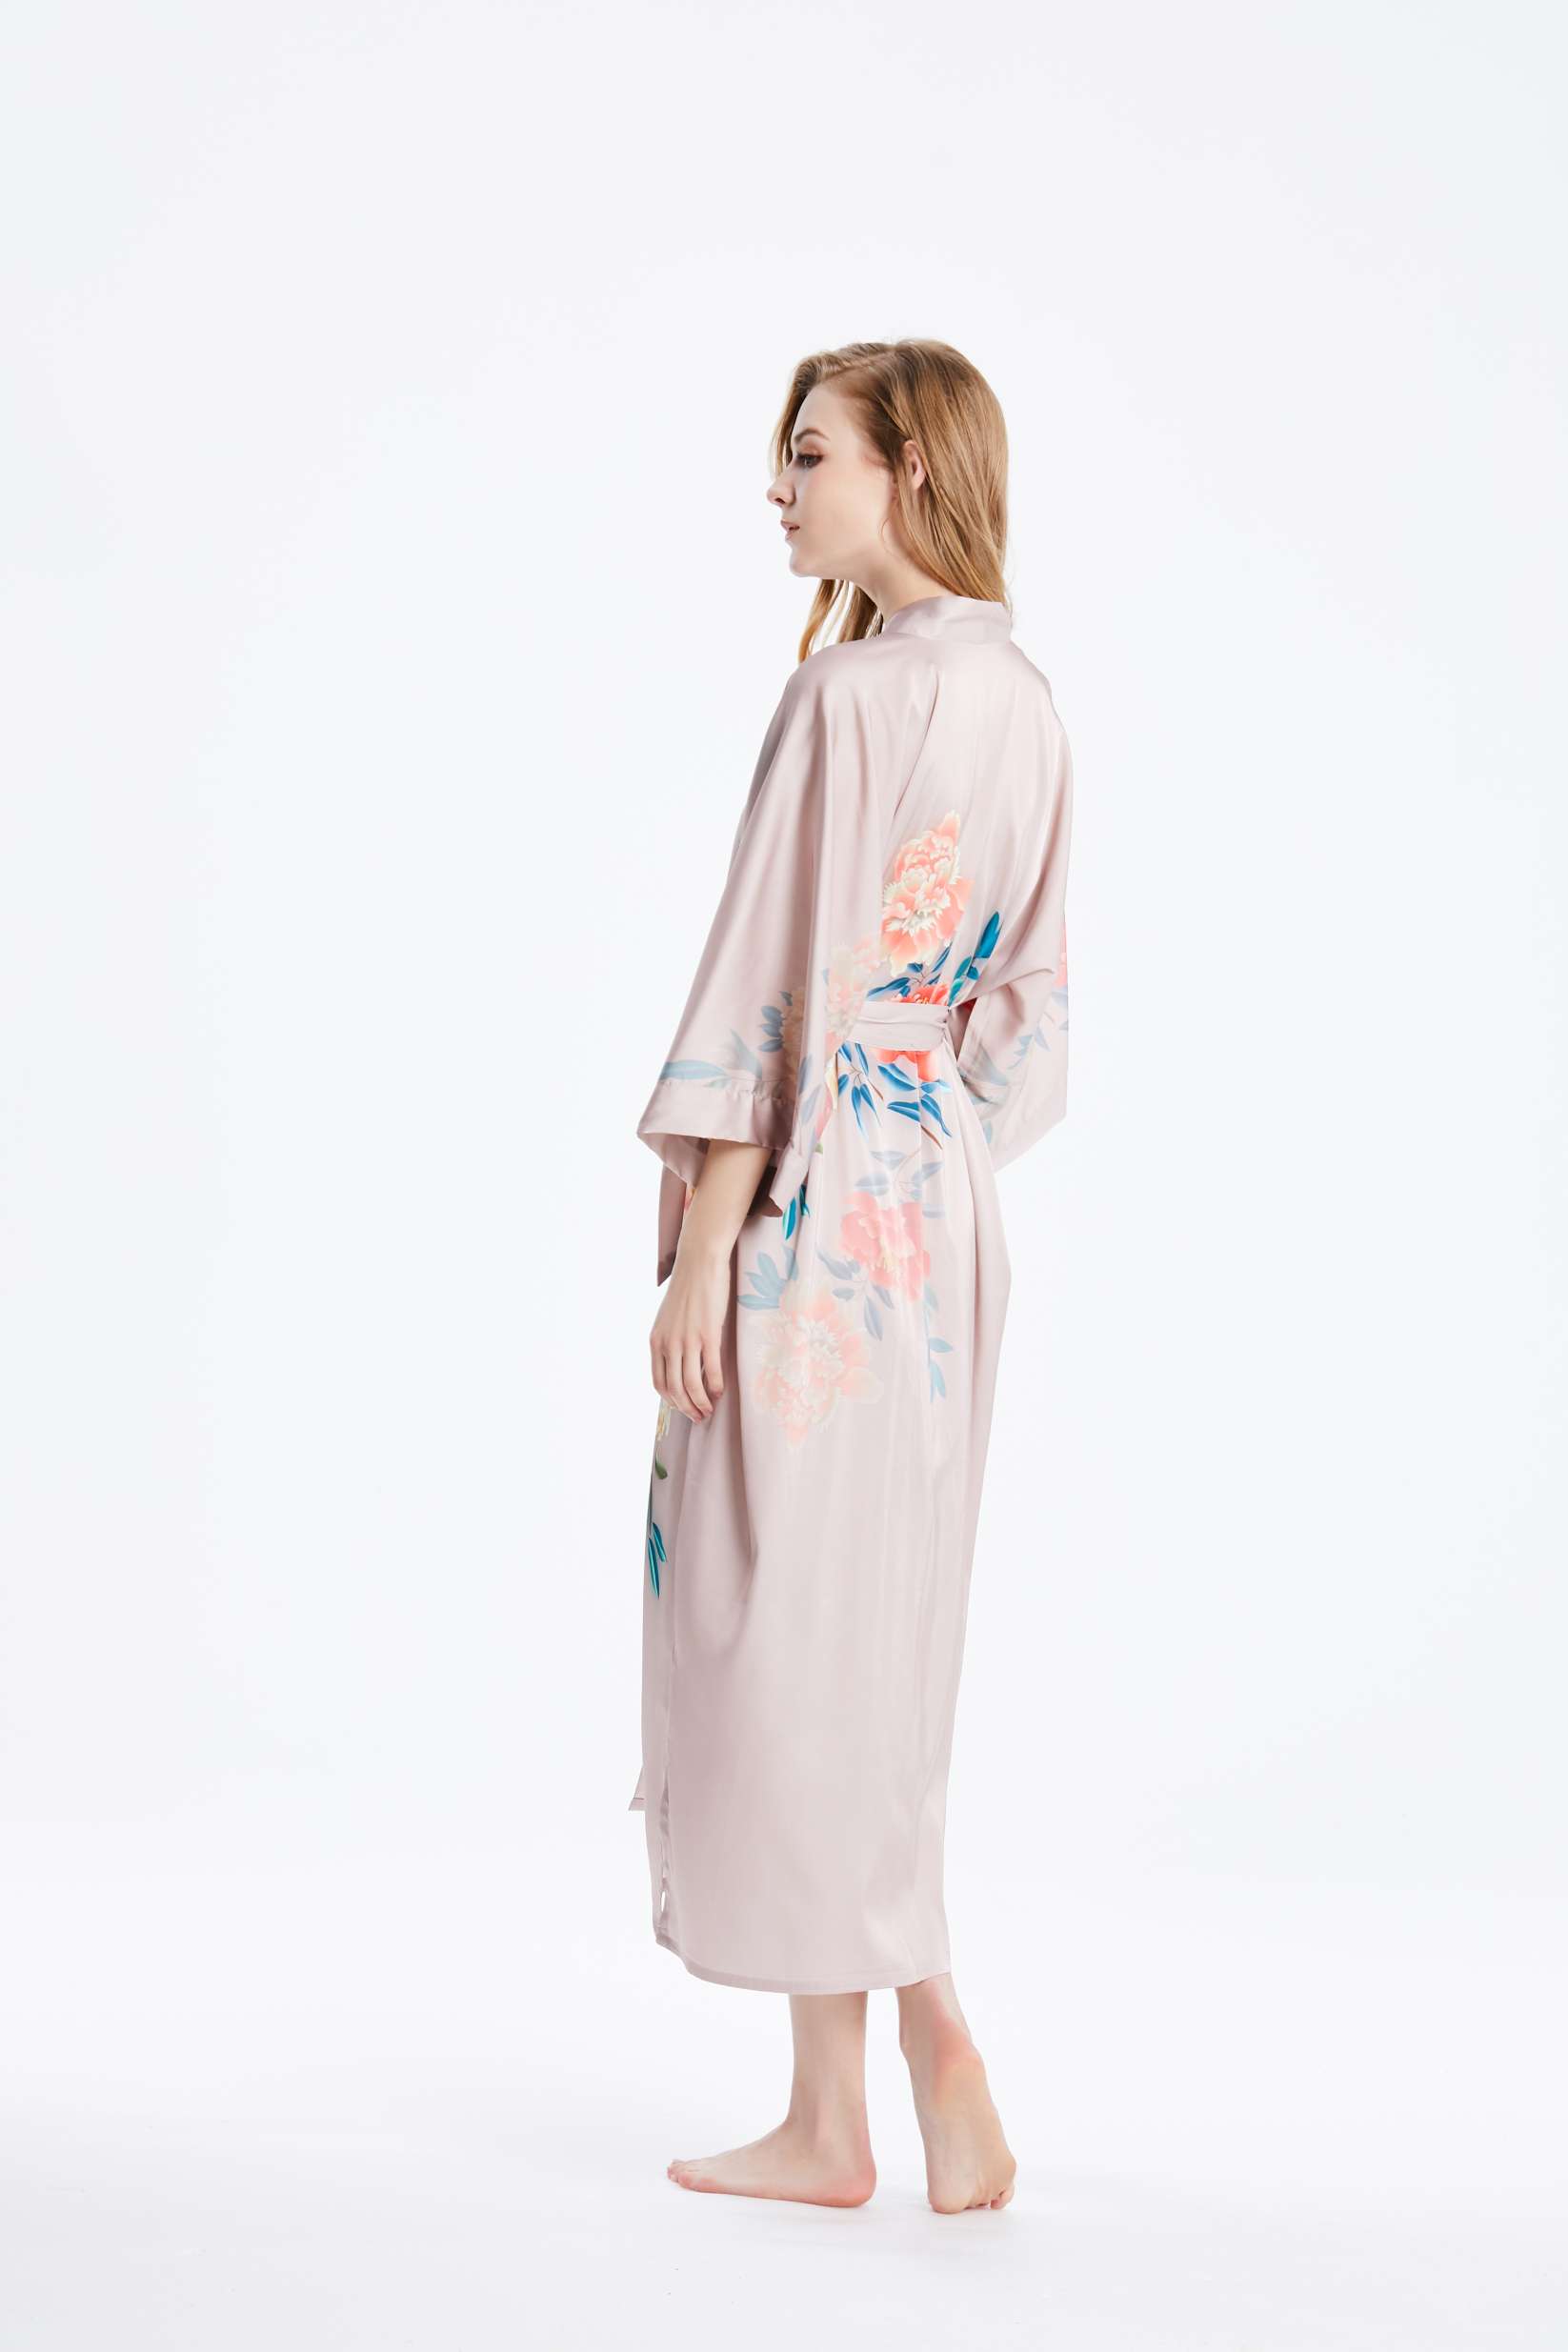 Female Kimono sleeve 100 Silk cherry Kimono Robe Nightgown with Floral Print Factory Wholesale